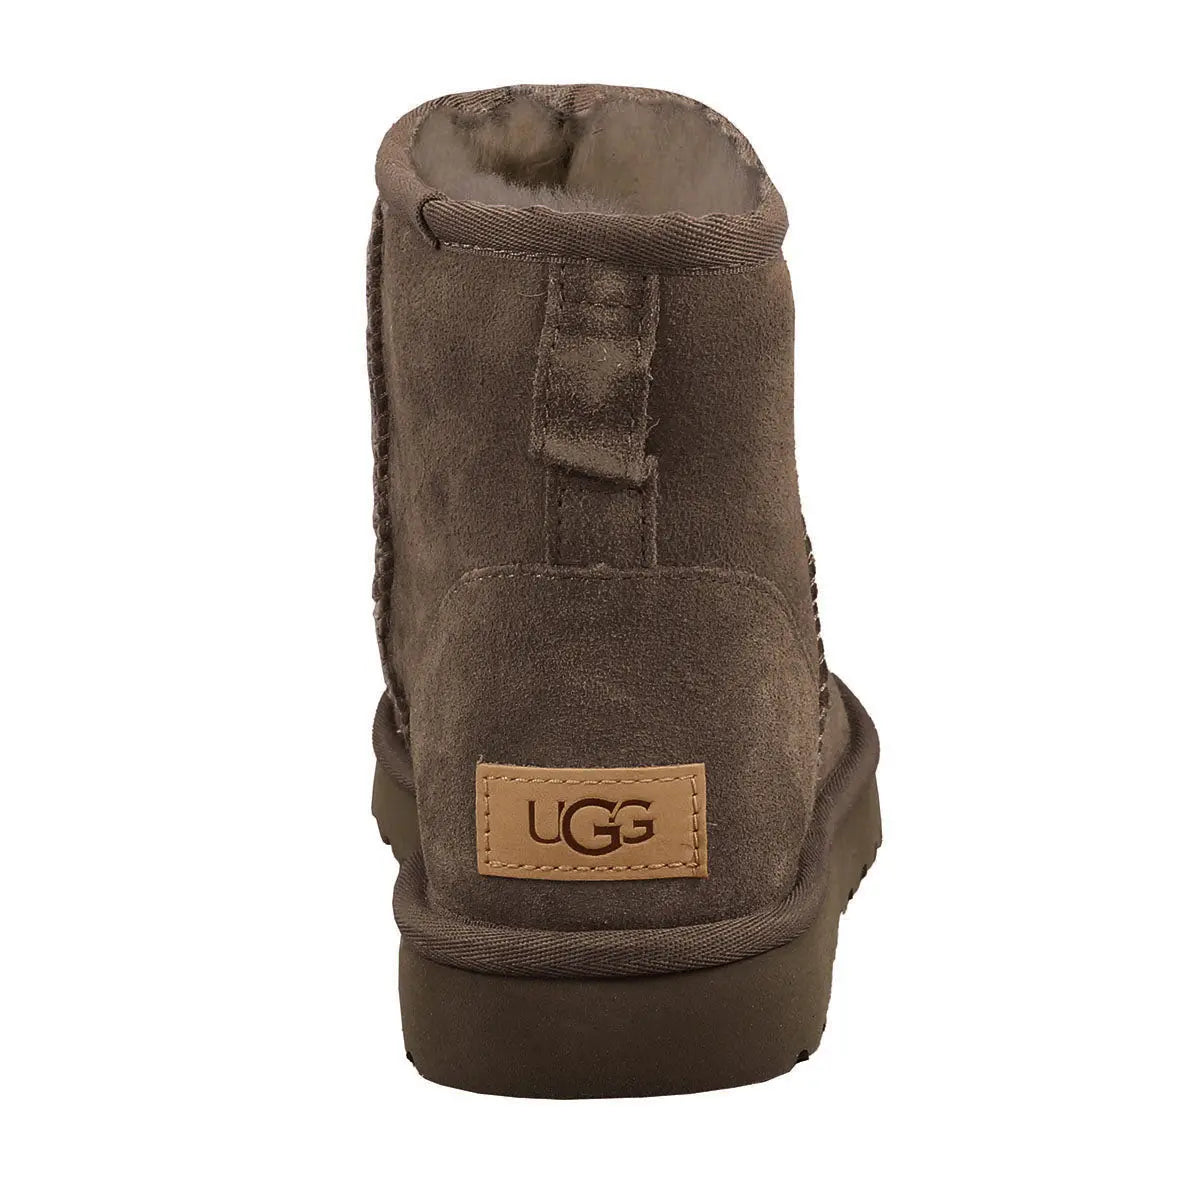 UGG Women's Classic Mini II Boots